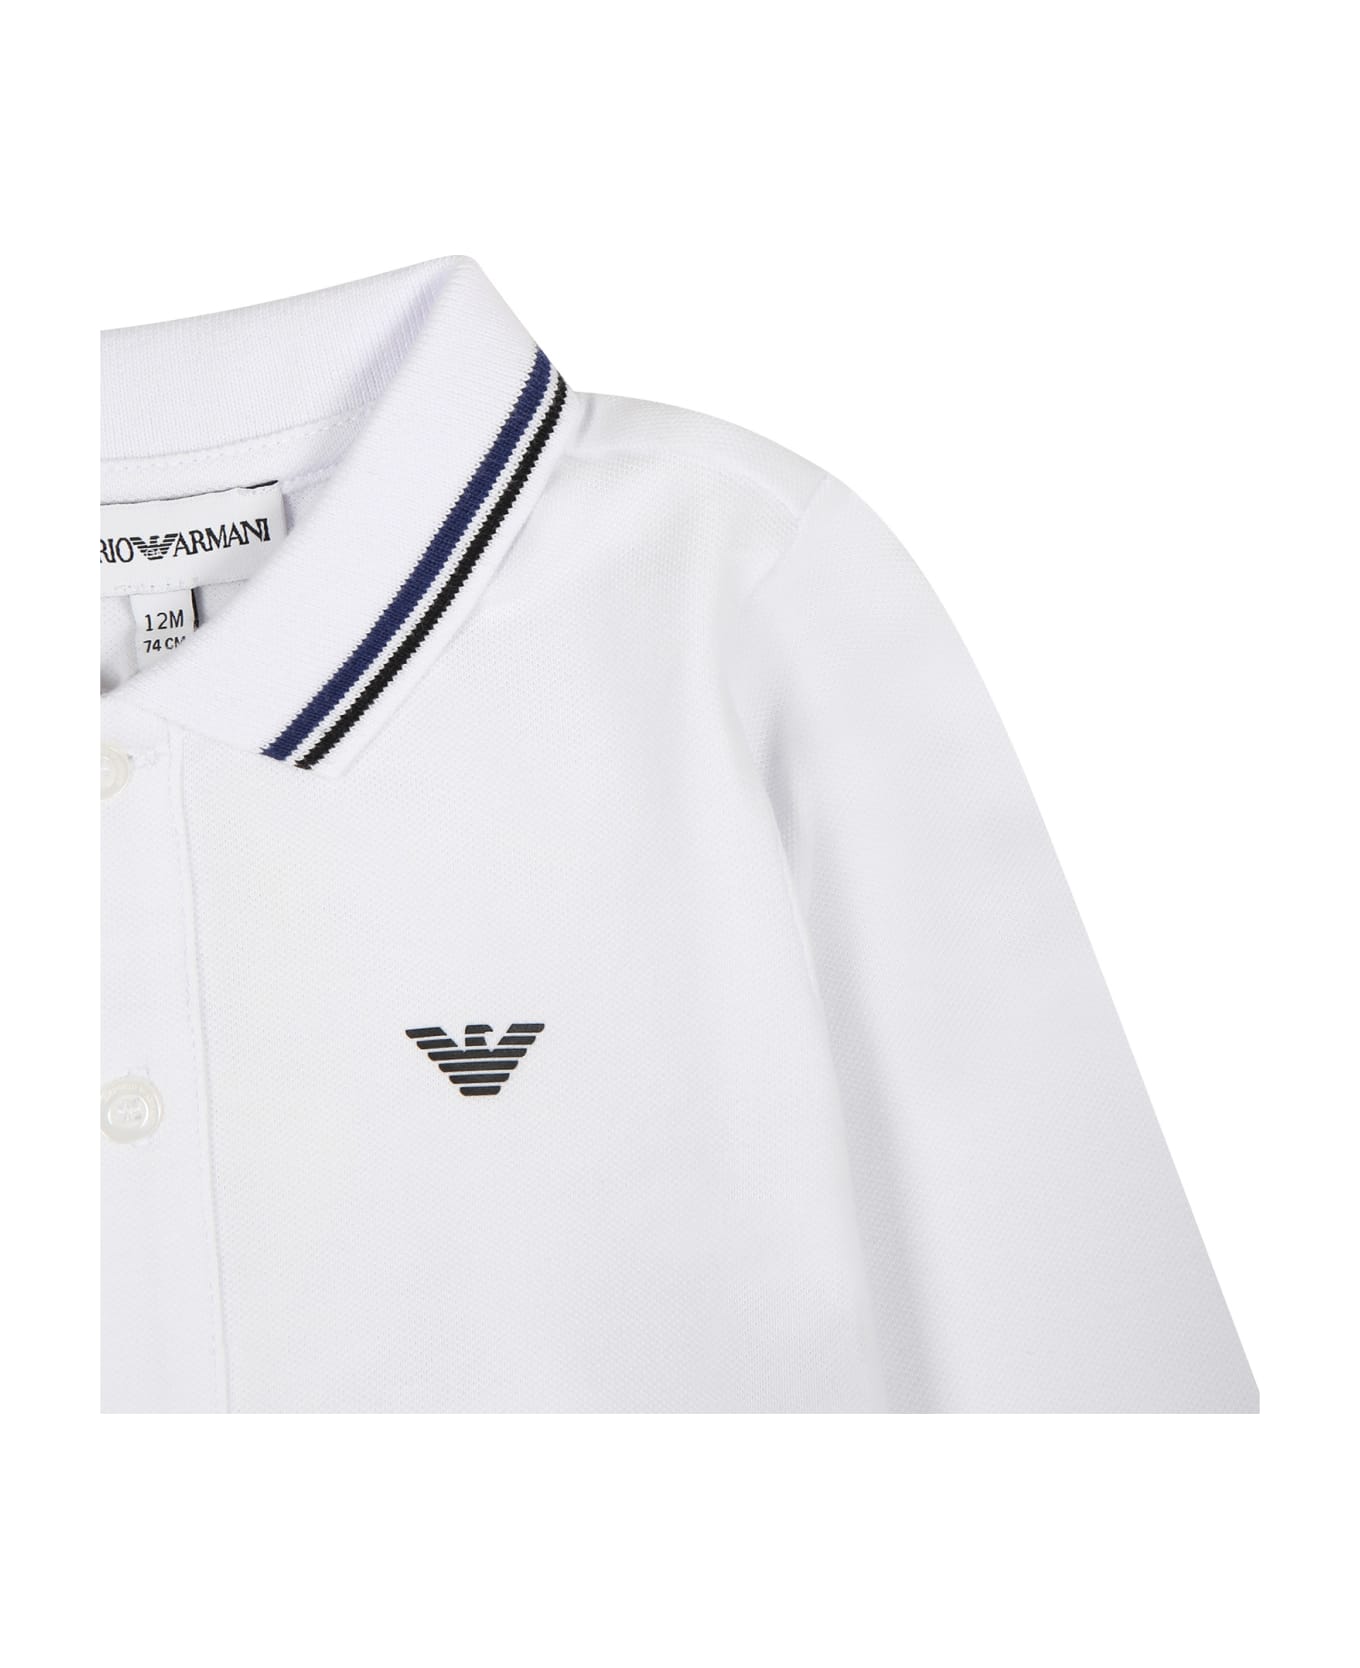 Emporio Armani White Polo Shirt For Baby Boy With Logo - White